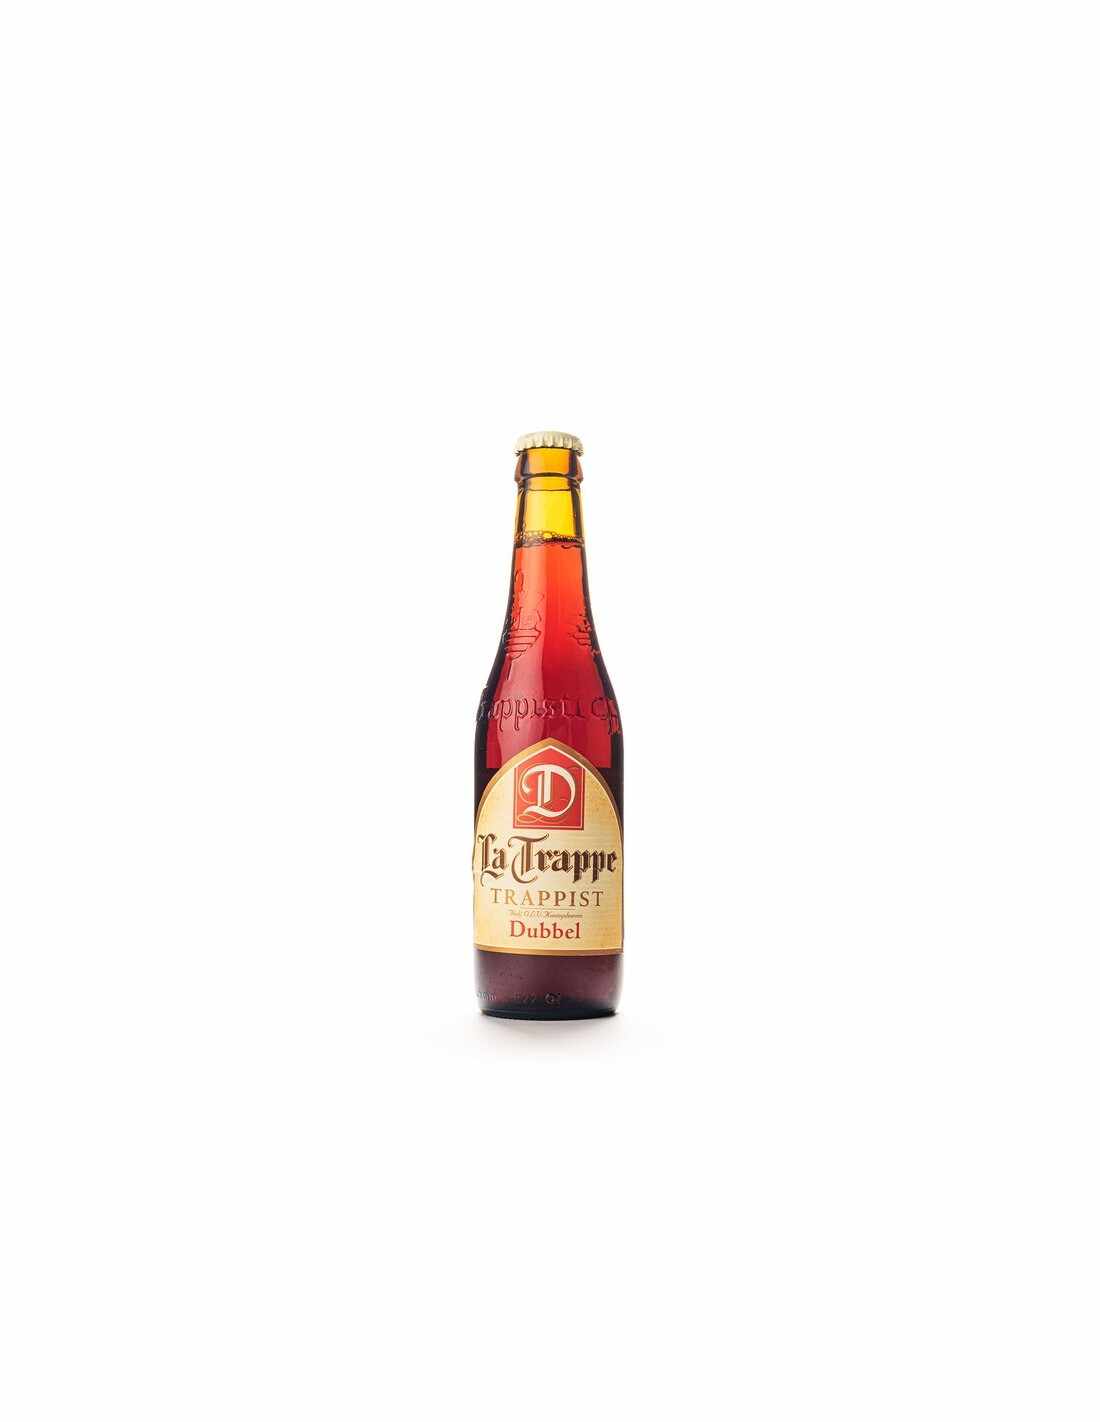 Bere bruna, nefiltrata La Trappe, 6.5% alc., 0.33L, Belgia